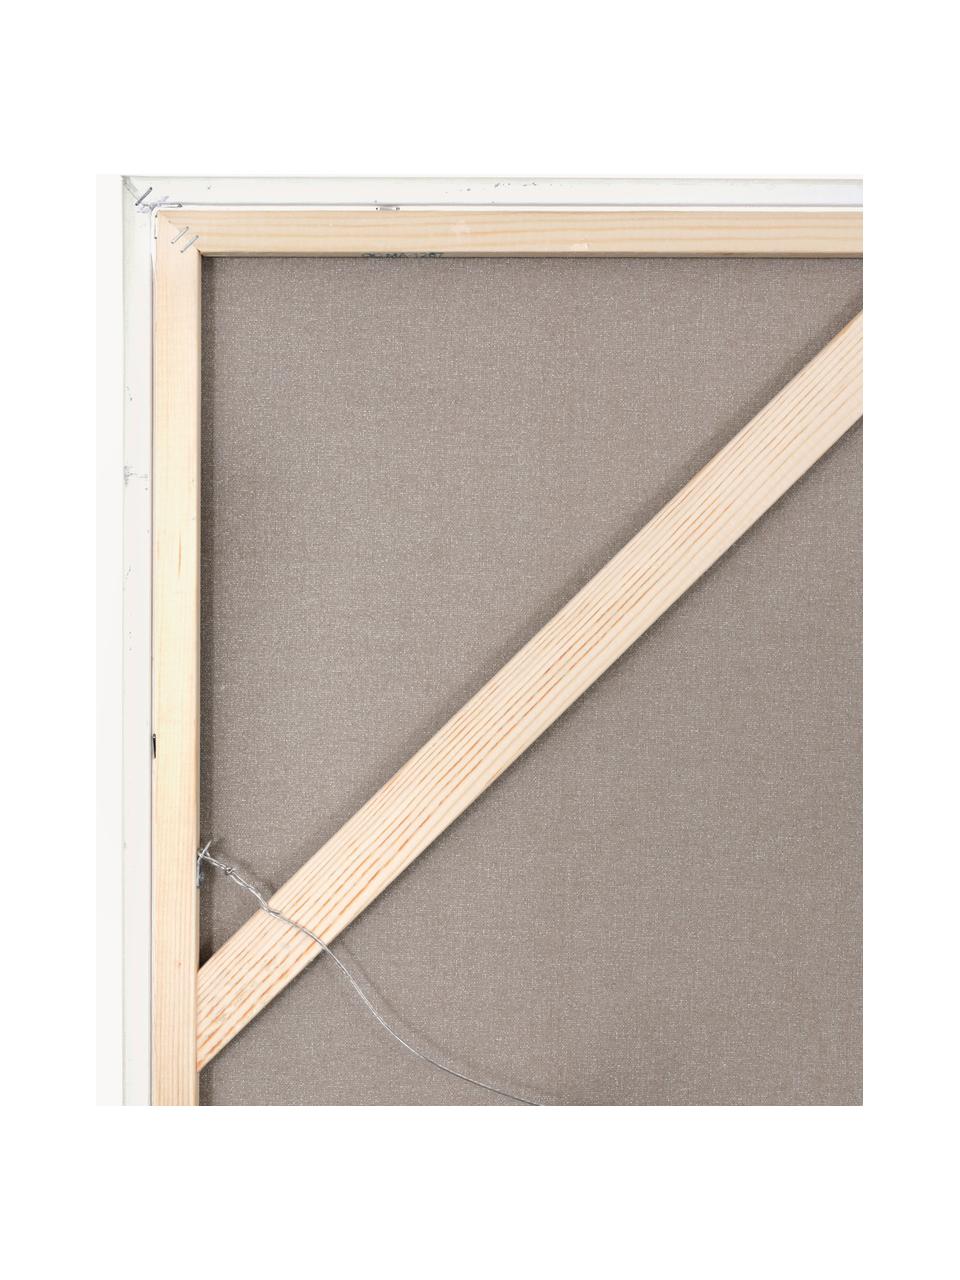 Handbeschilderde canvasdoek Playblack met houten frame, Lijst: eikenhout, gecoat, Design 1, B 102 x H 102 cm